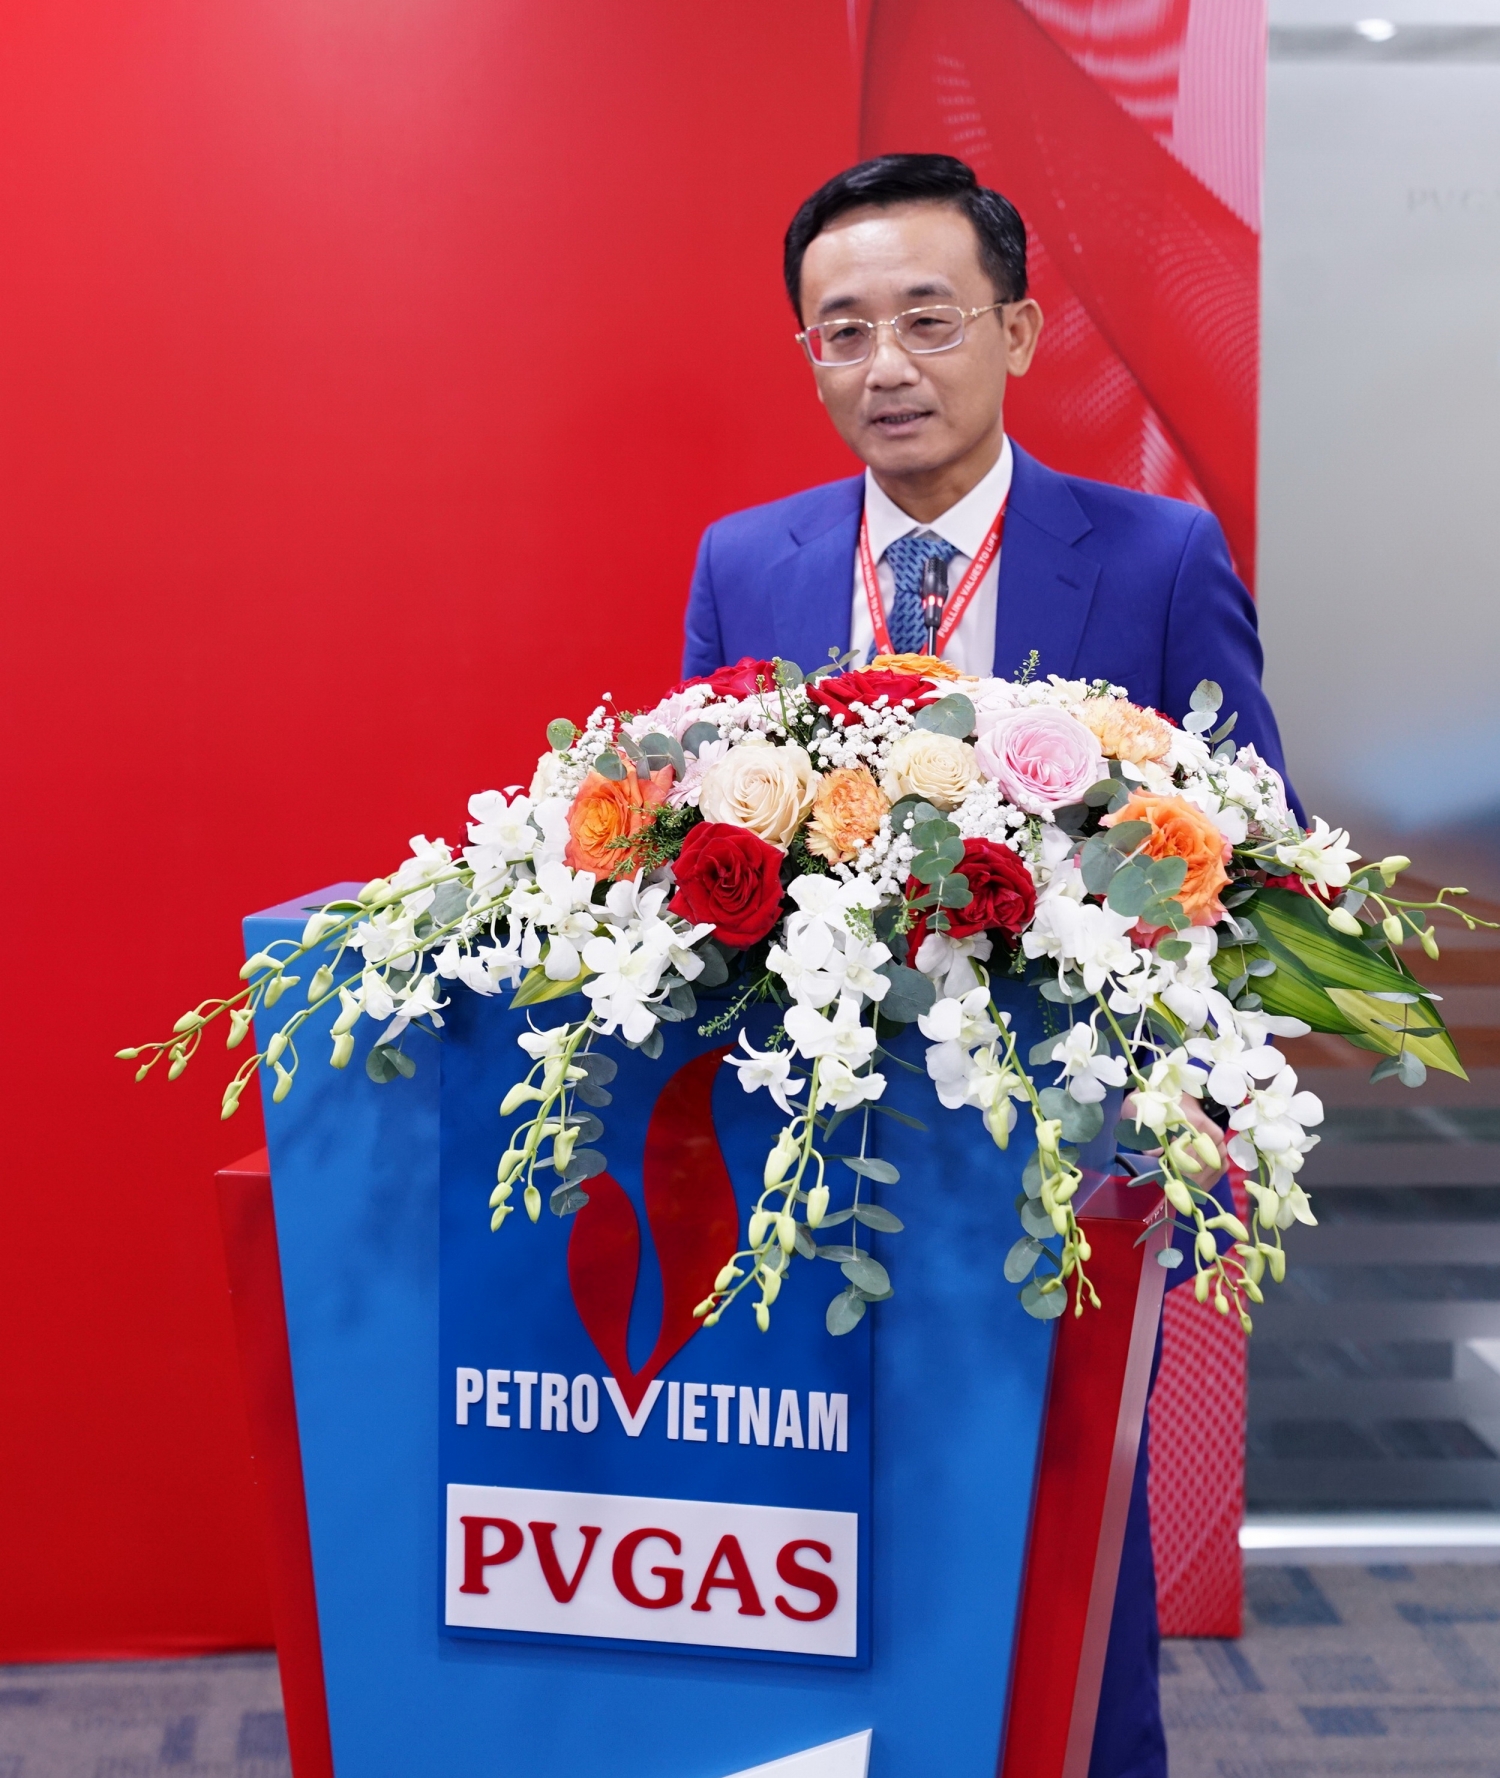 Phó Tổng giám đốc PV GAS Trần Nhật Huy phát biểu nhận nhiệm vụ ở cương vị mới